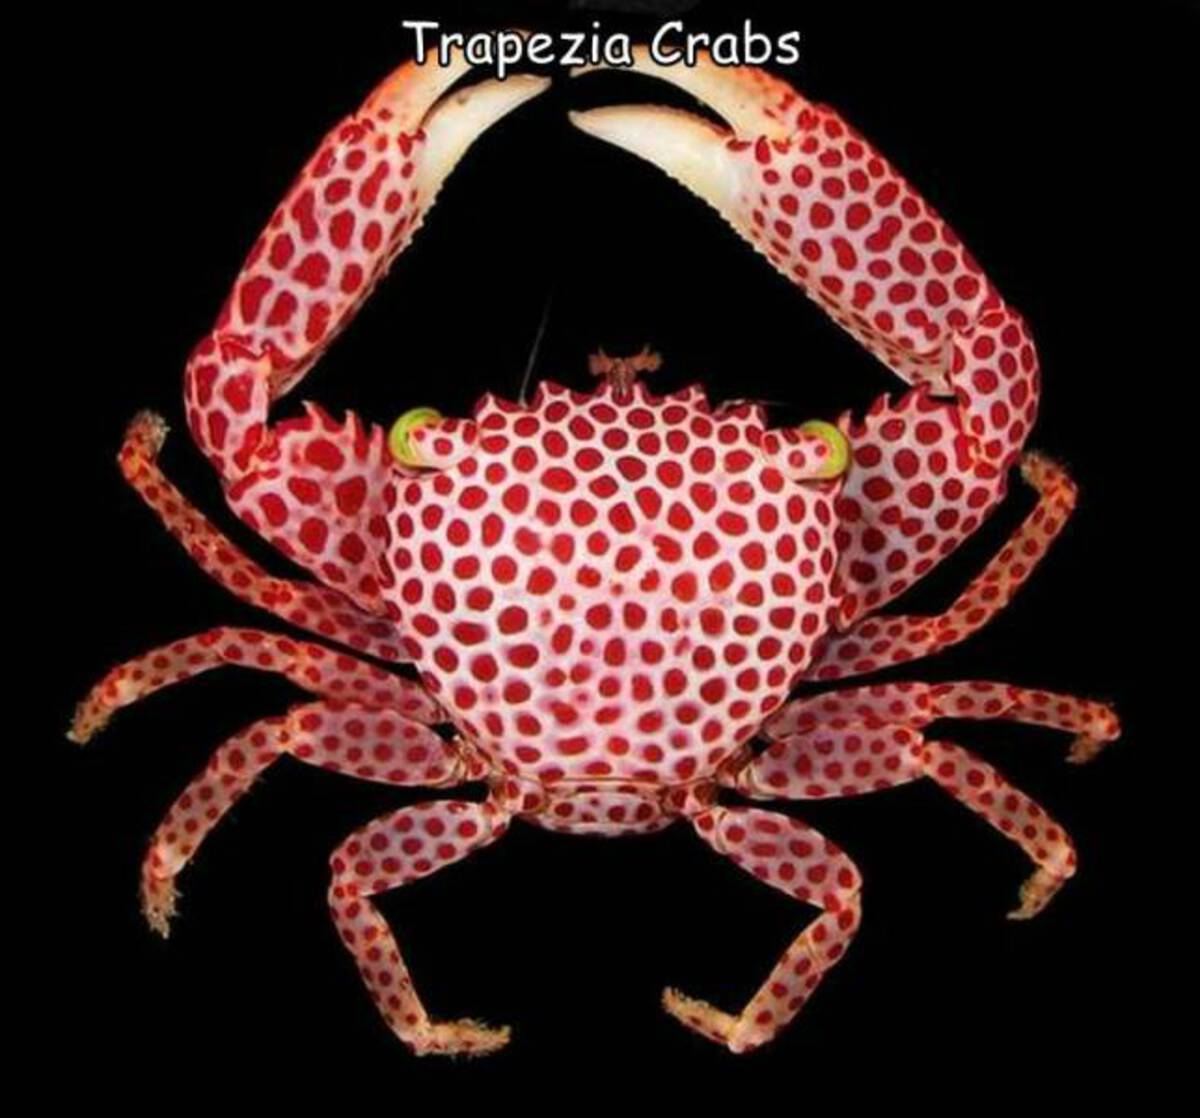 trapezia rufopunctata - Trapezia Crabs